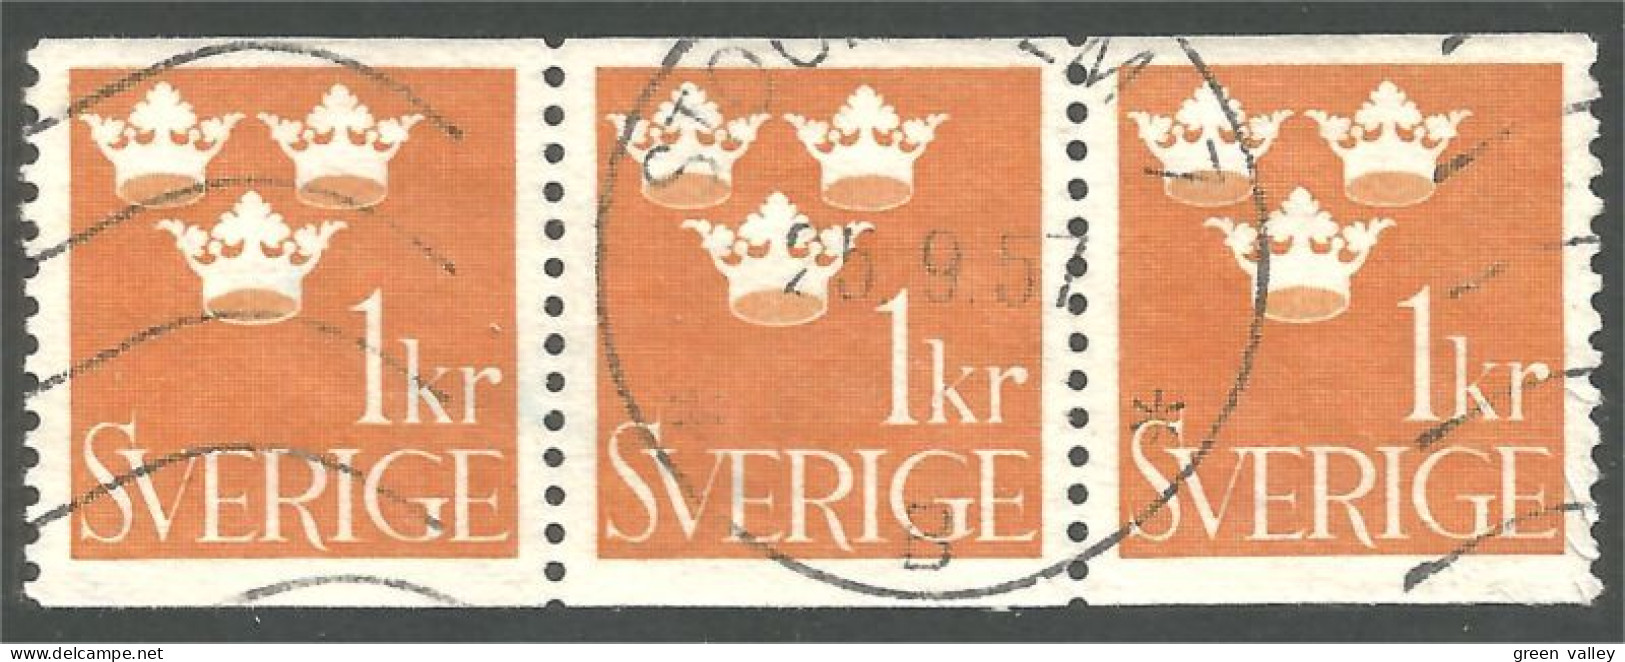 840 Sweden 1939 Trois Couronnes Three Crowns 1kr Orange Bande Strip 3 (SWE-426) - Gebraucht